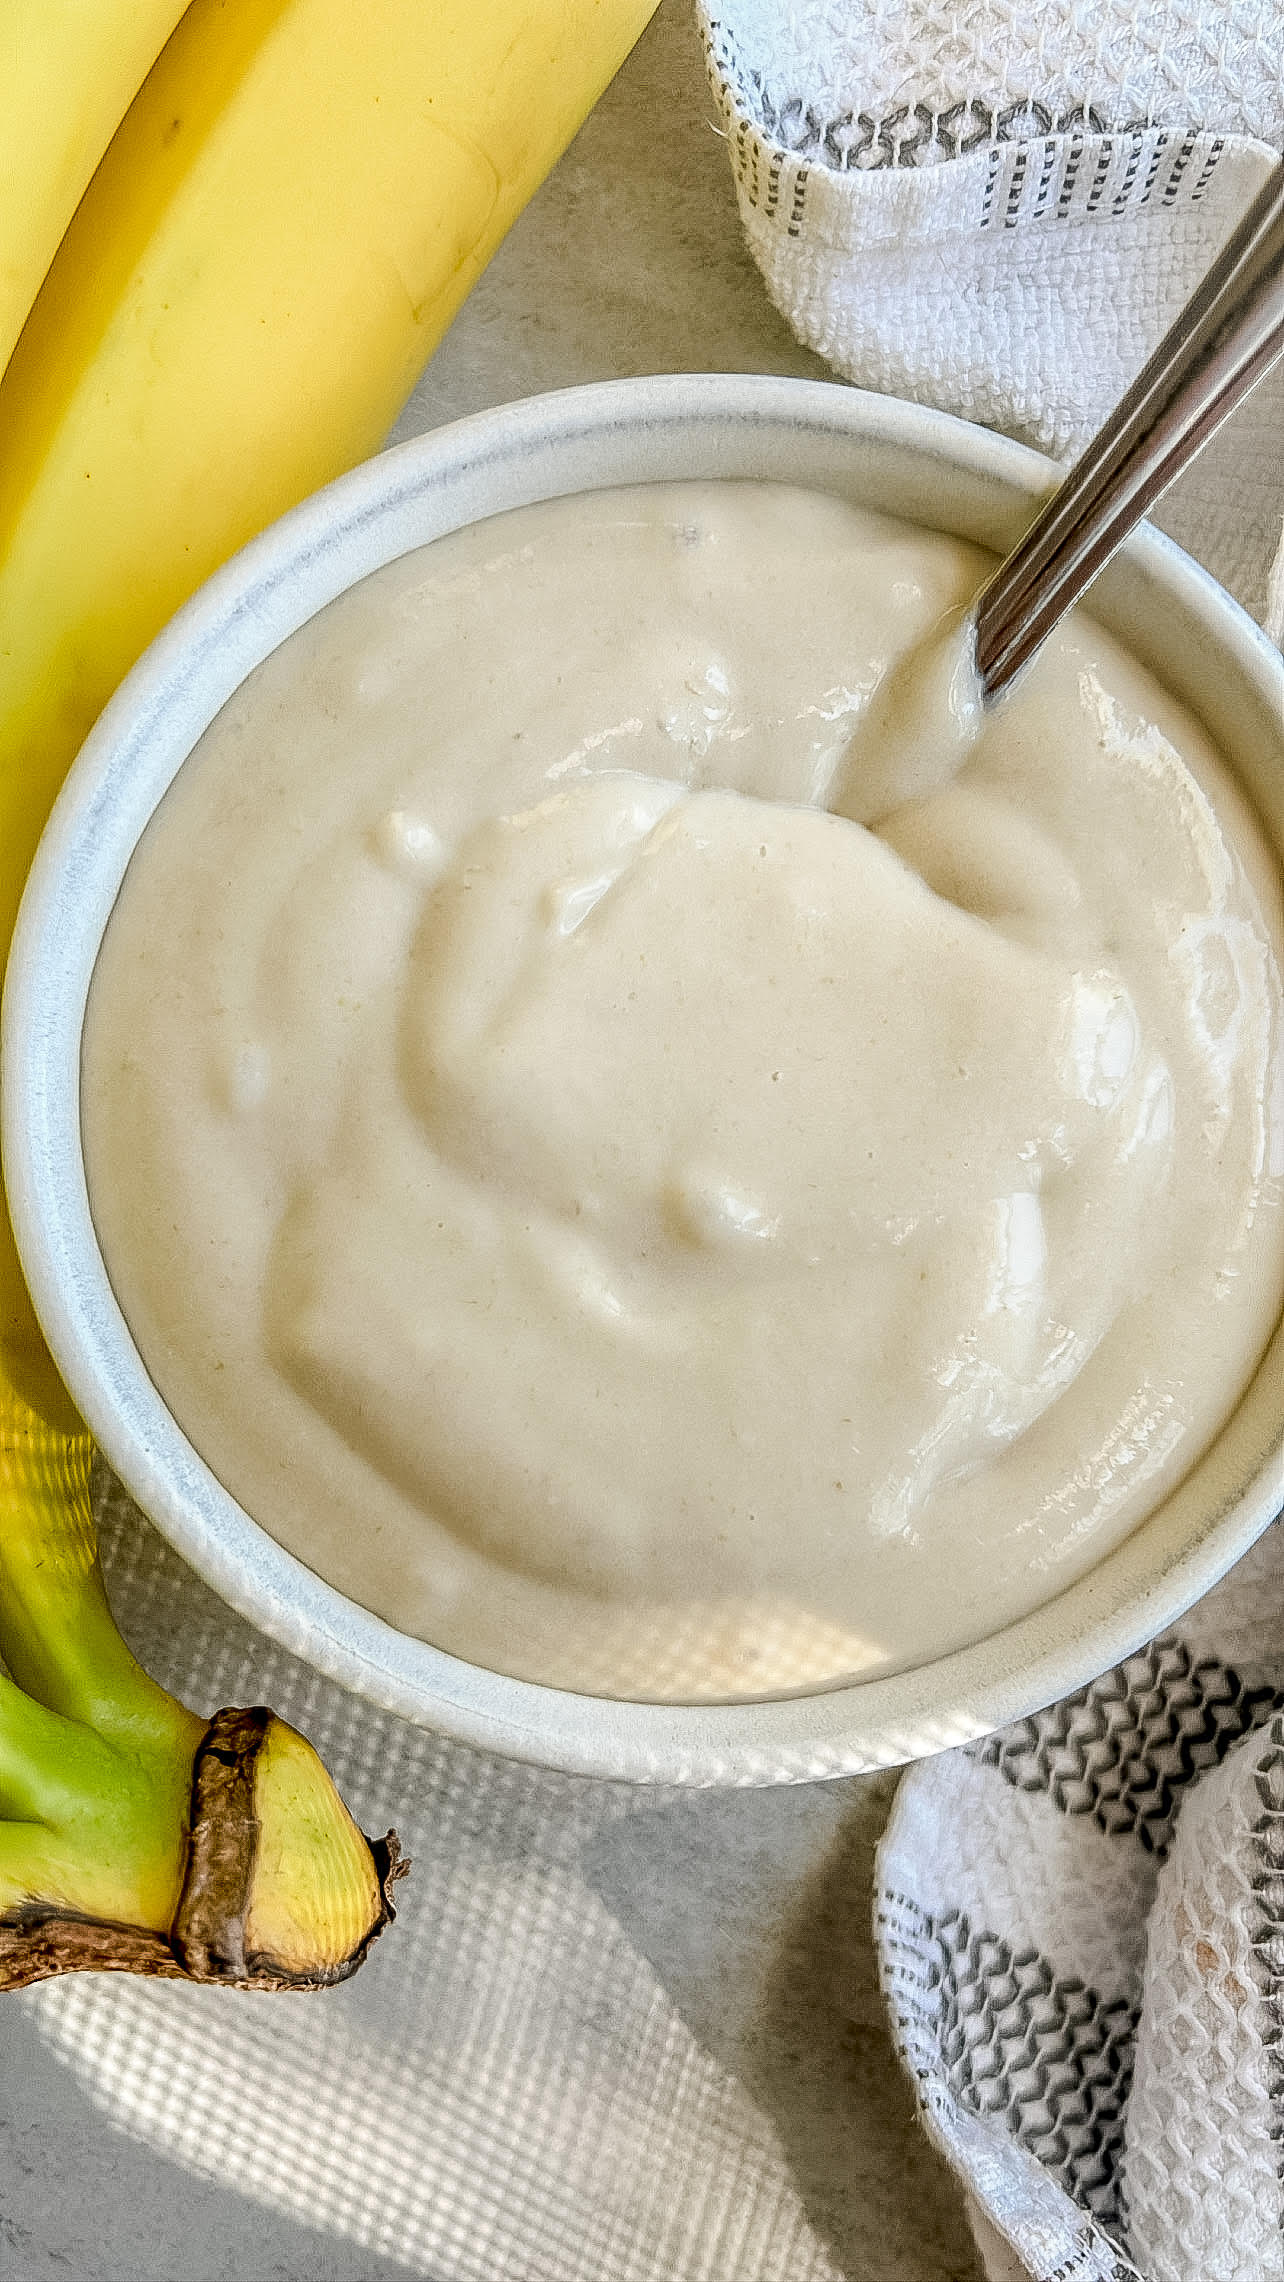 animal-based banana pudding